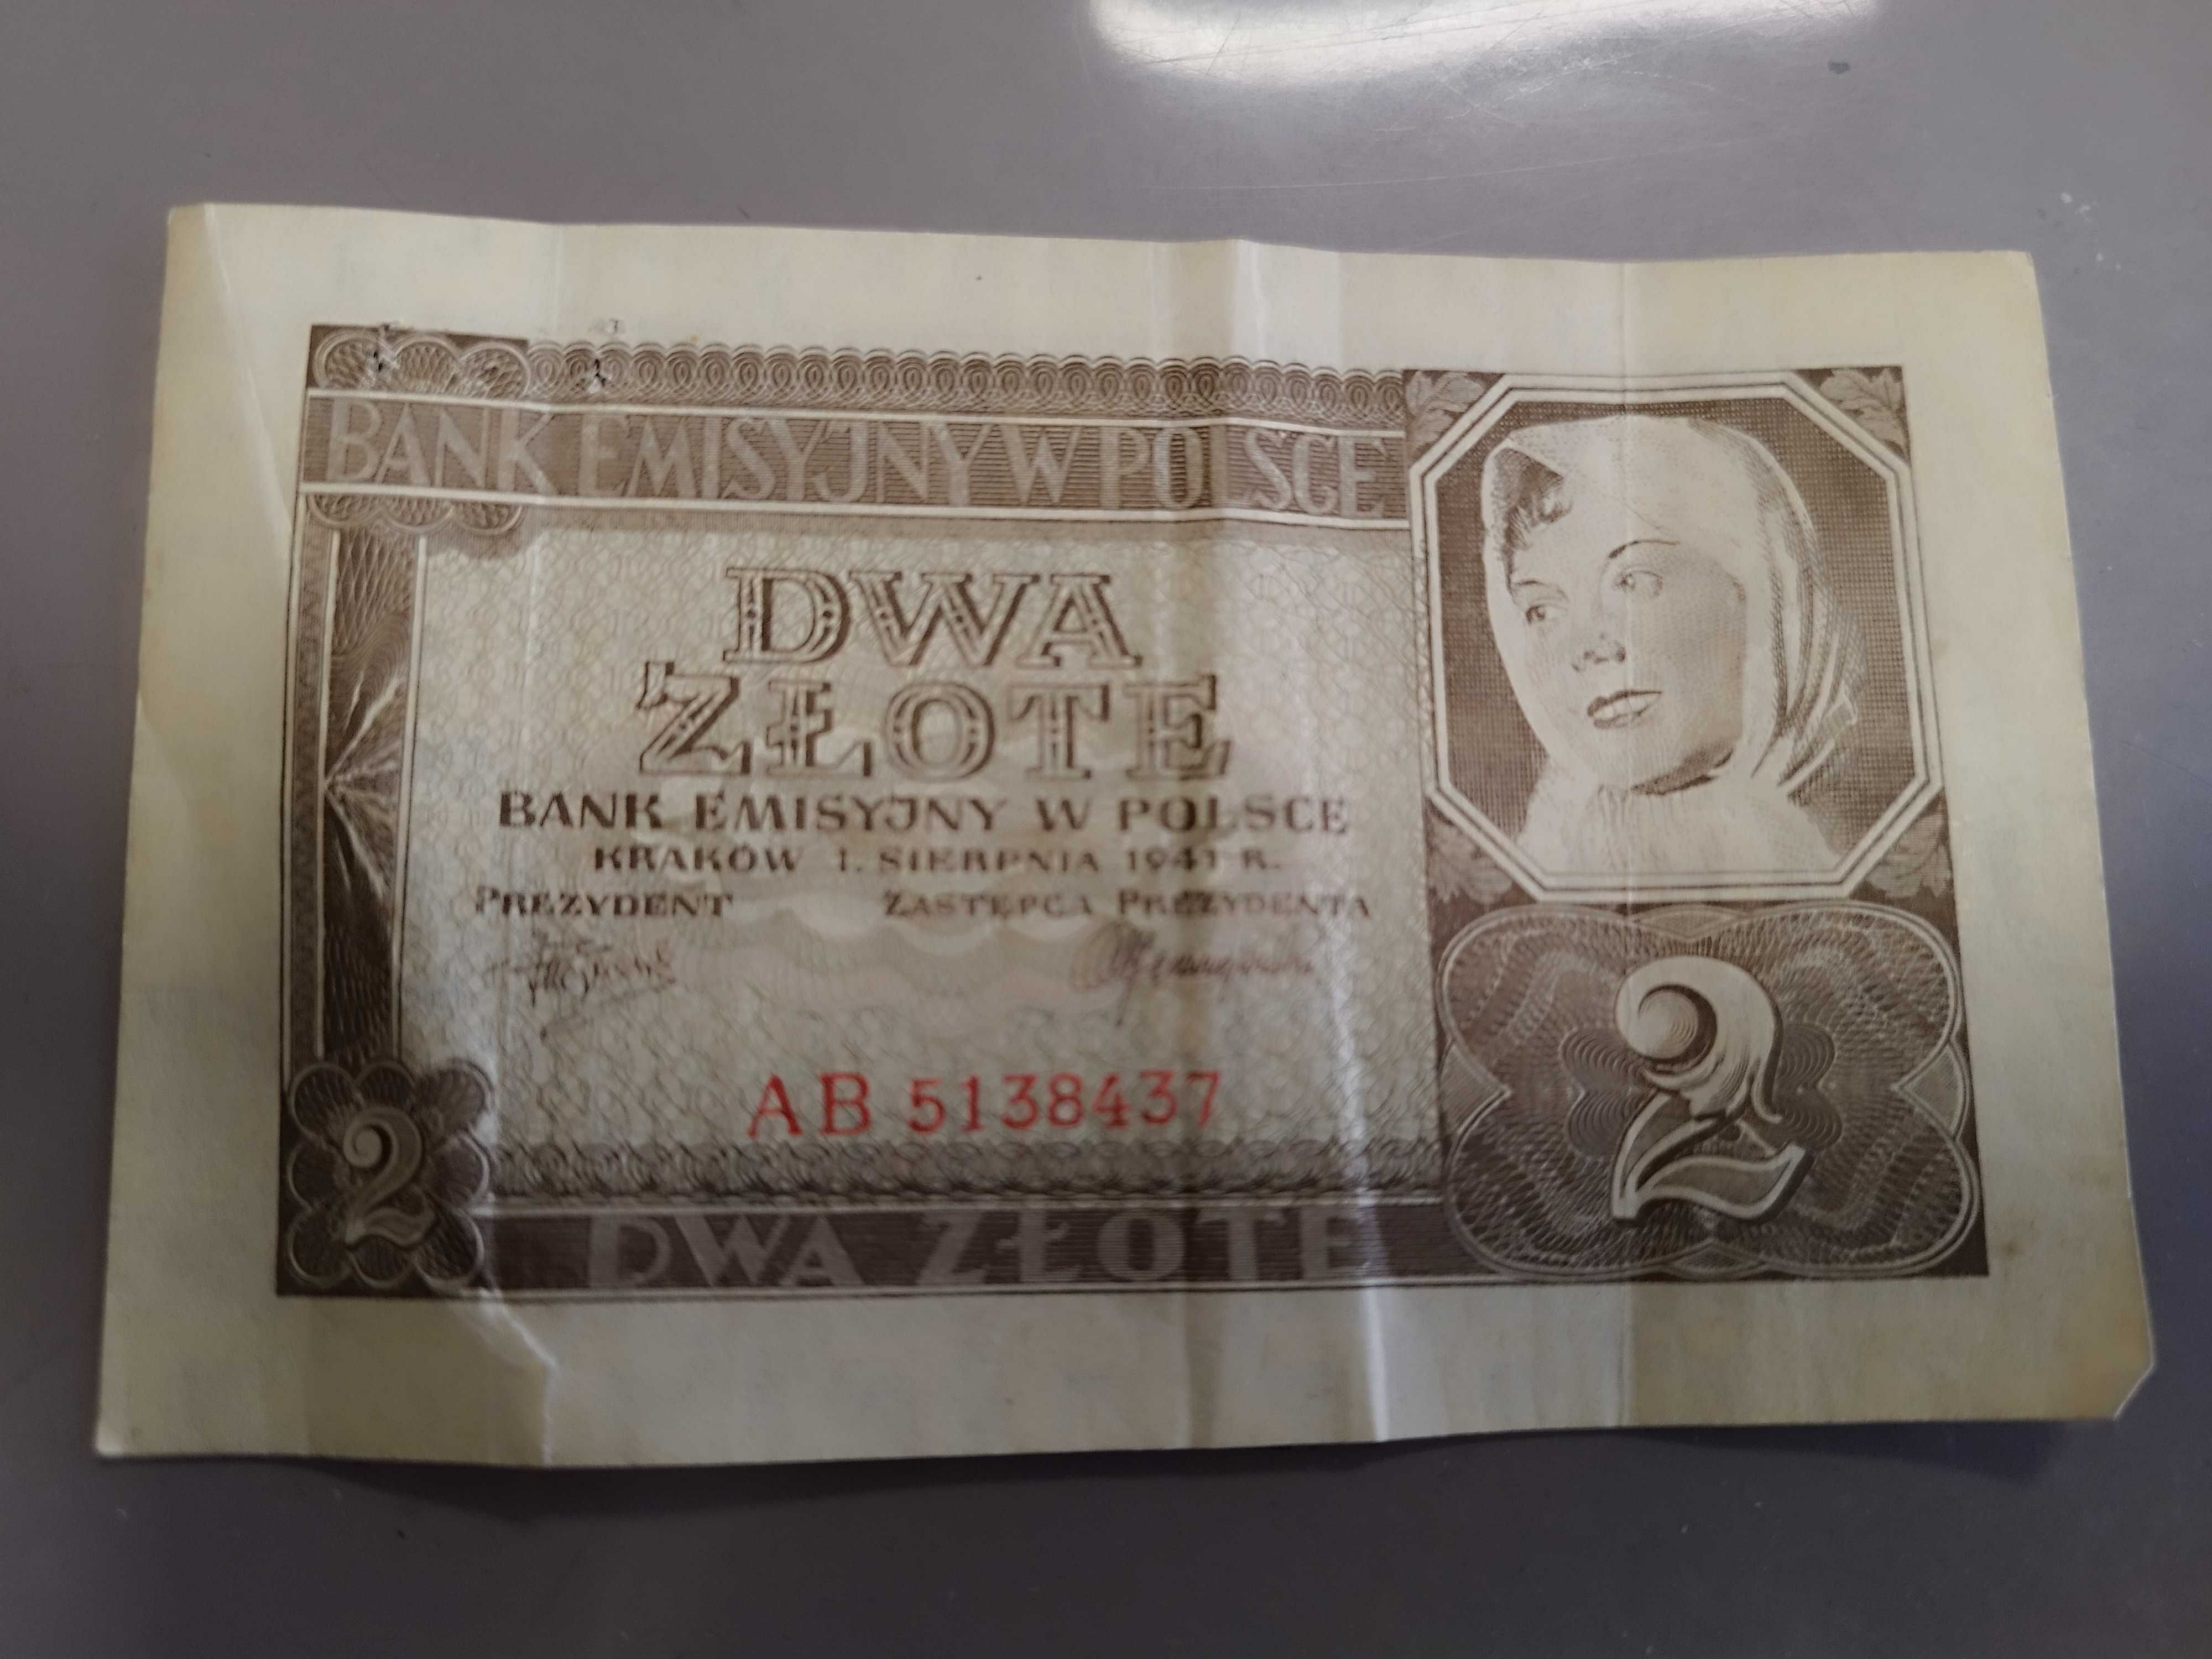 Banknot 2 zł z 1941 roku sprzedam.